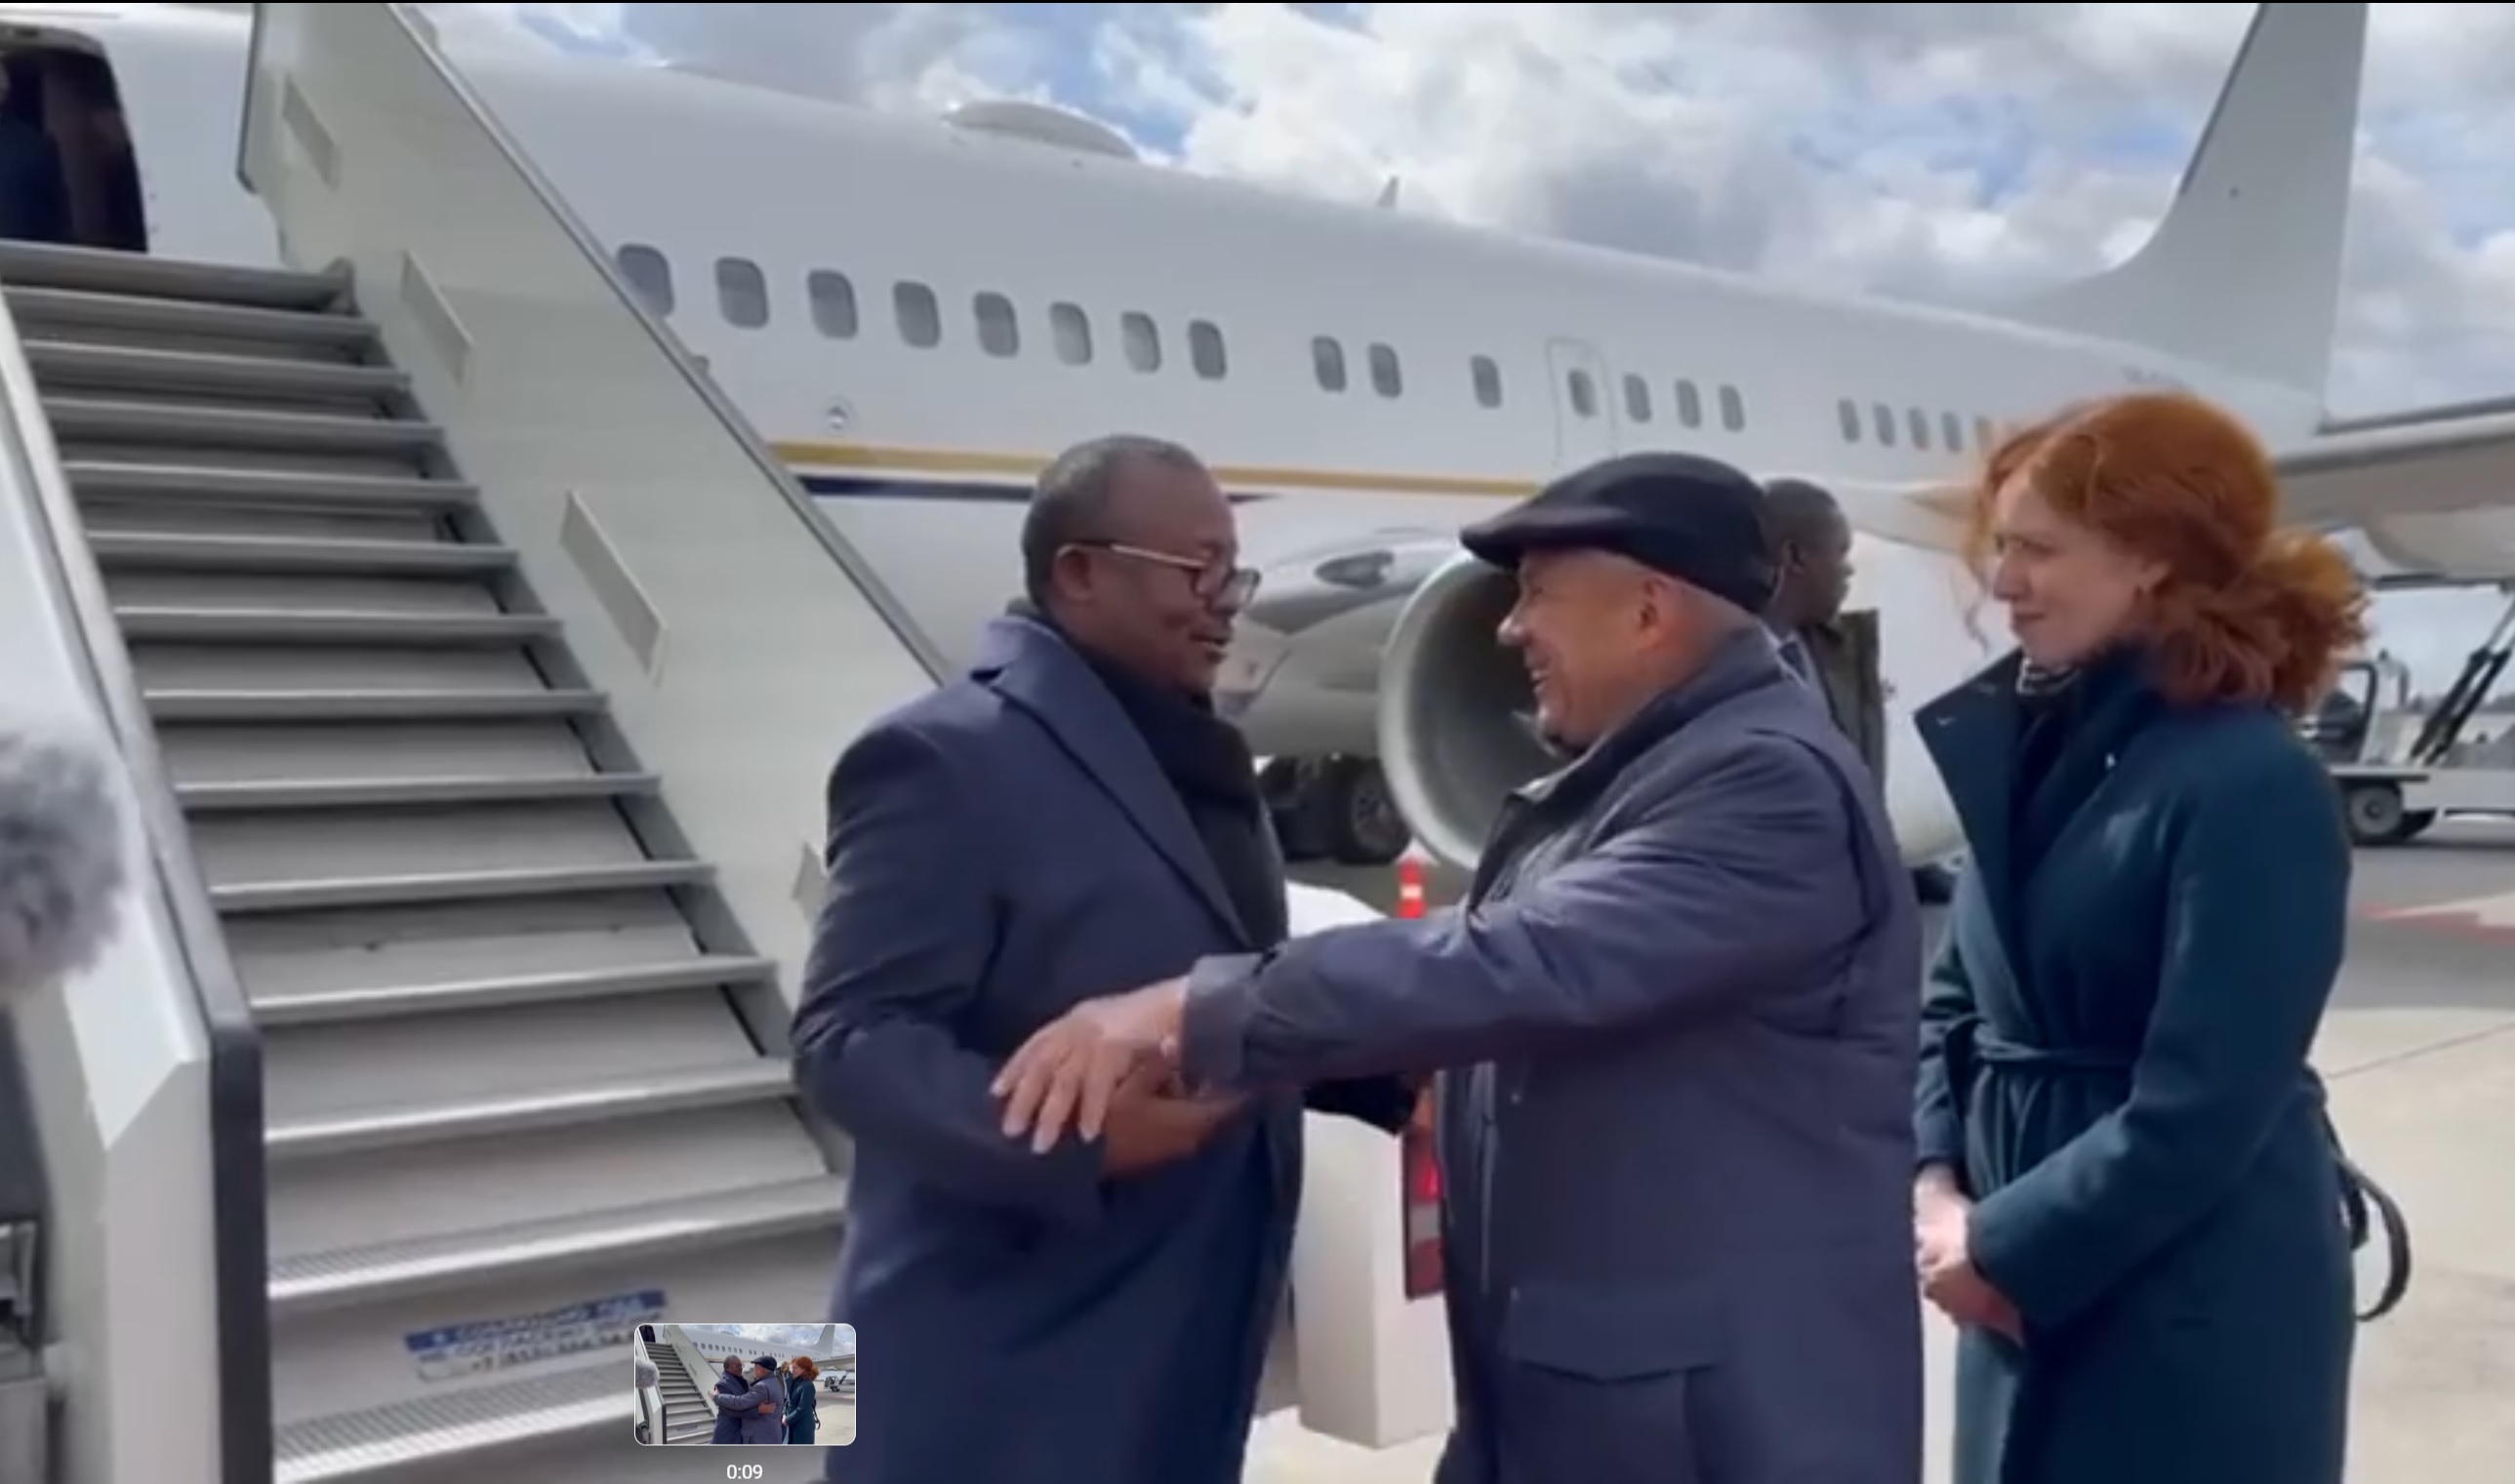 Рустам Минниханов встречает в аэропорту Казани президента Гвинеи-Бисау Умару Сисоку Эмбало